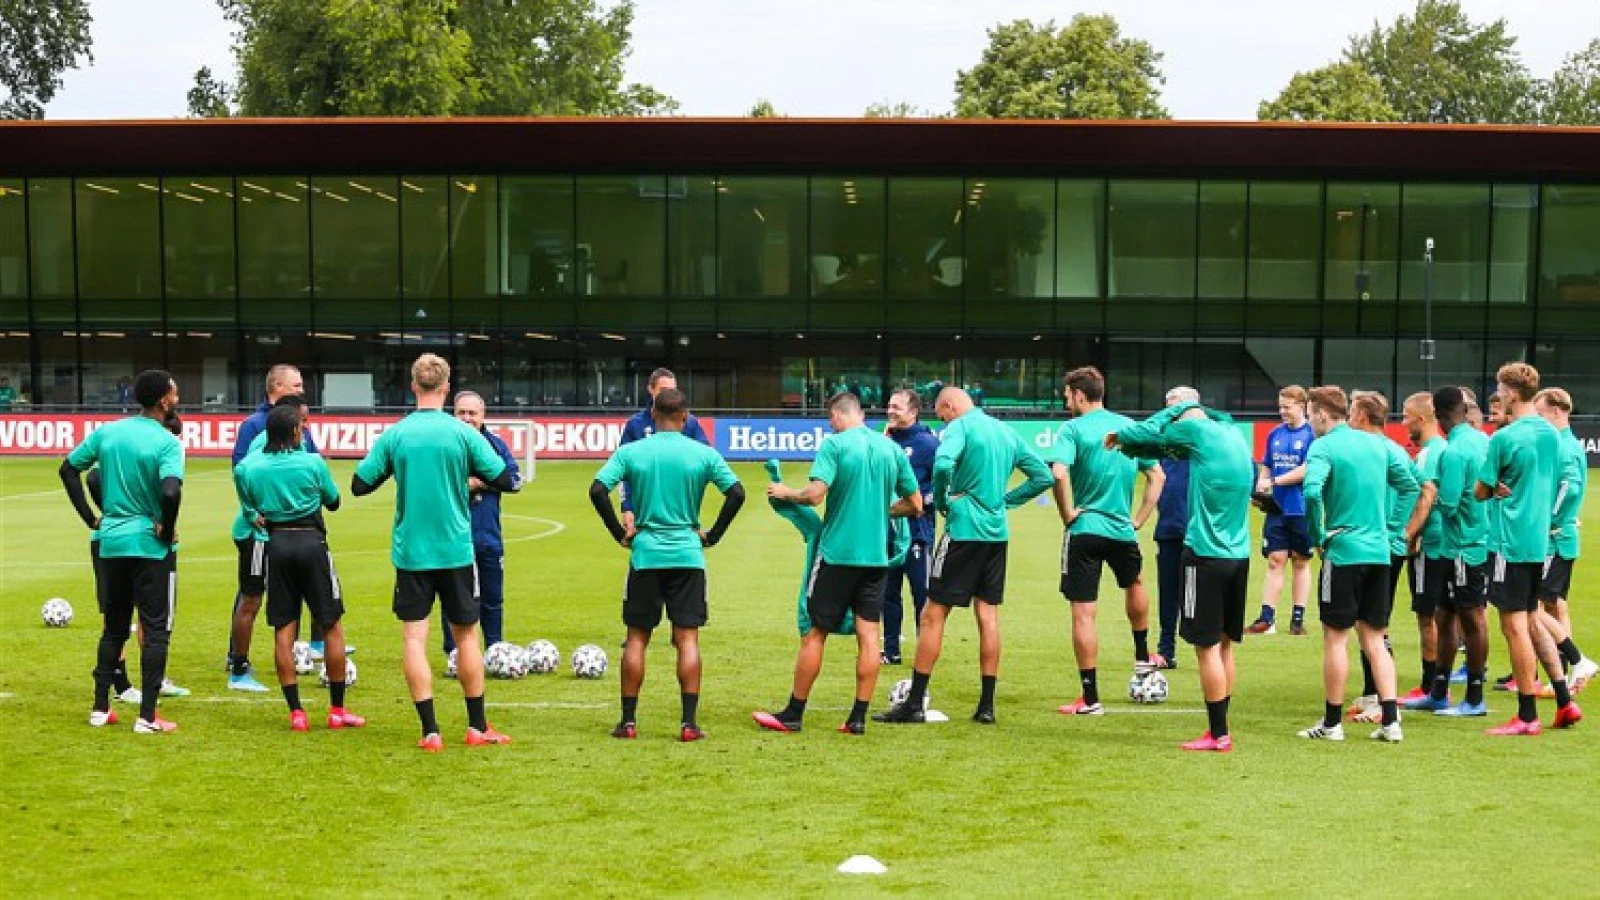 OVERZICHT | Dit is de selectie van Feyenoord voor het trainingskamp in Duitsland